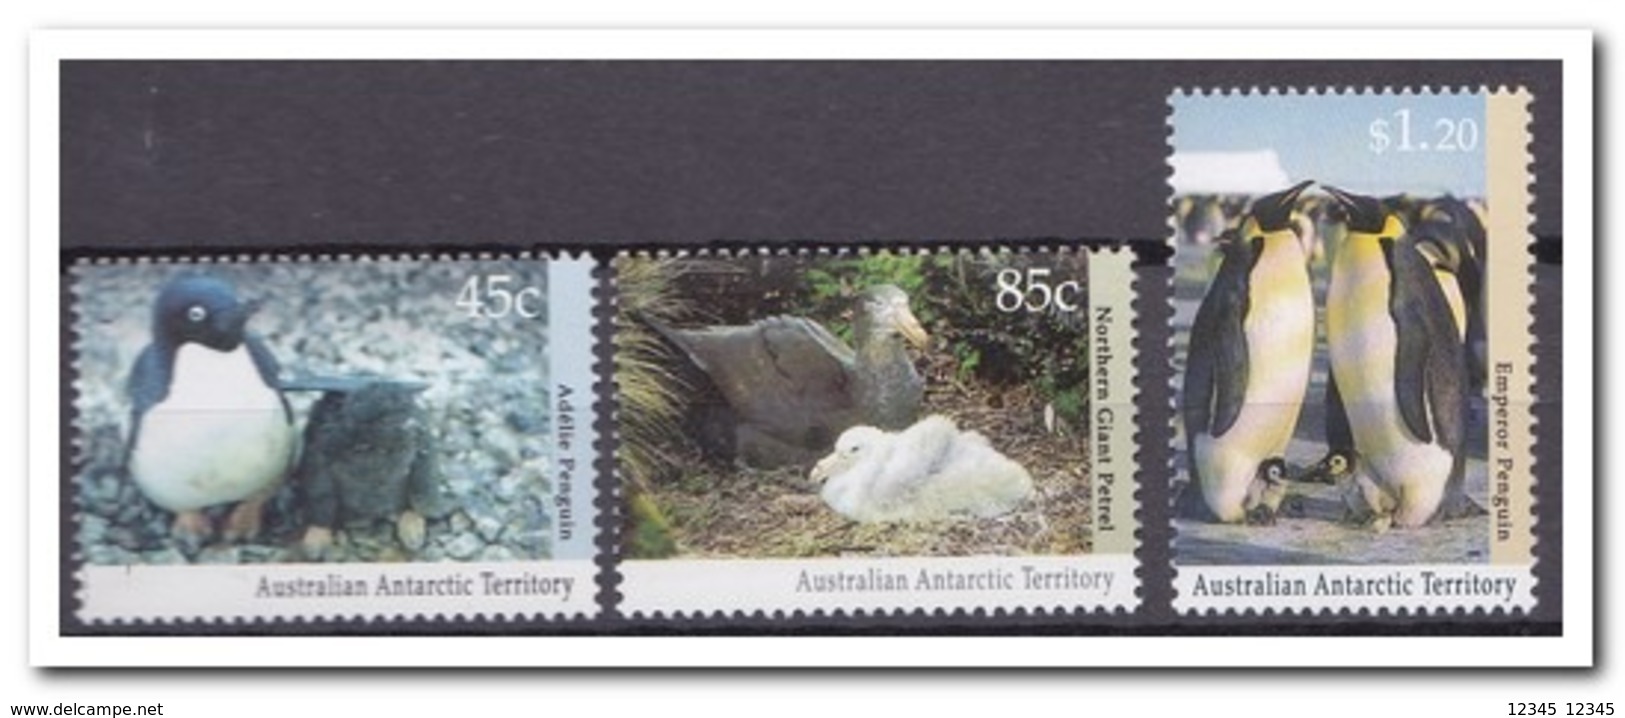 Australisch Antarctica 1992, Postfris MNH, Penguins, Birds - Unused Stamps